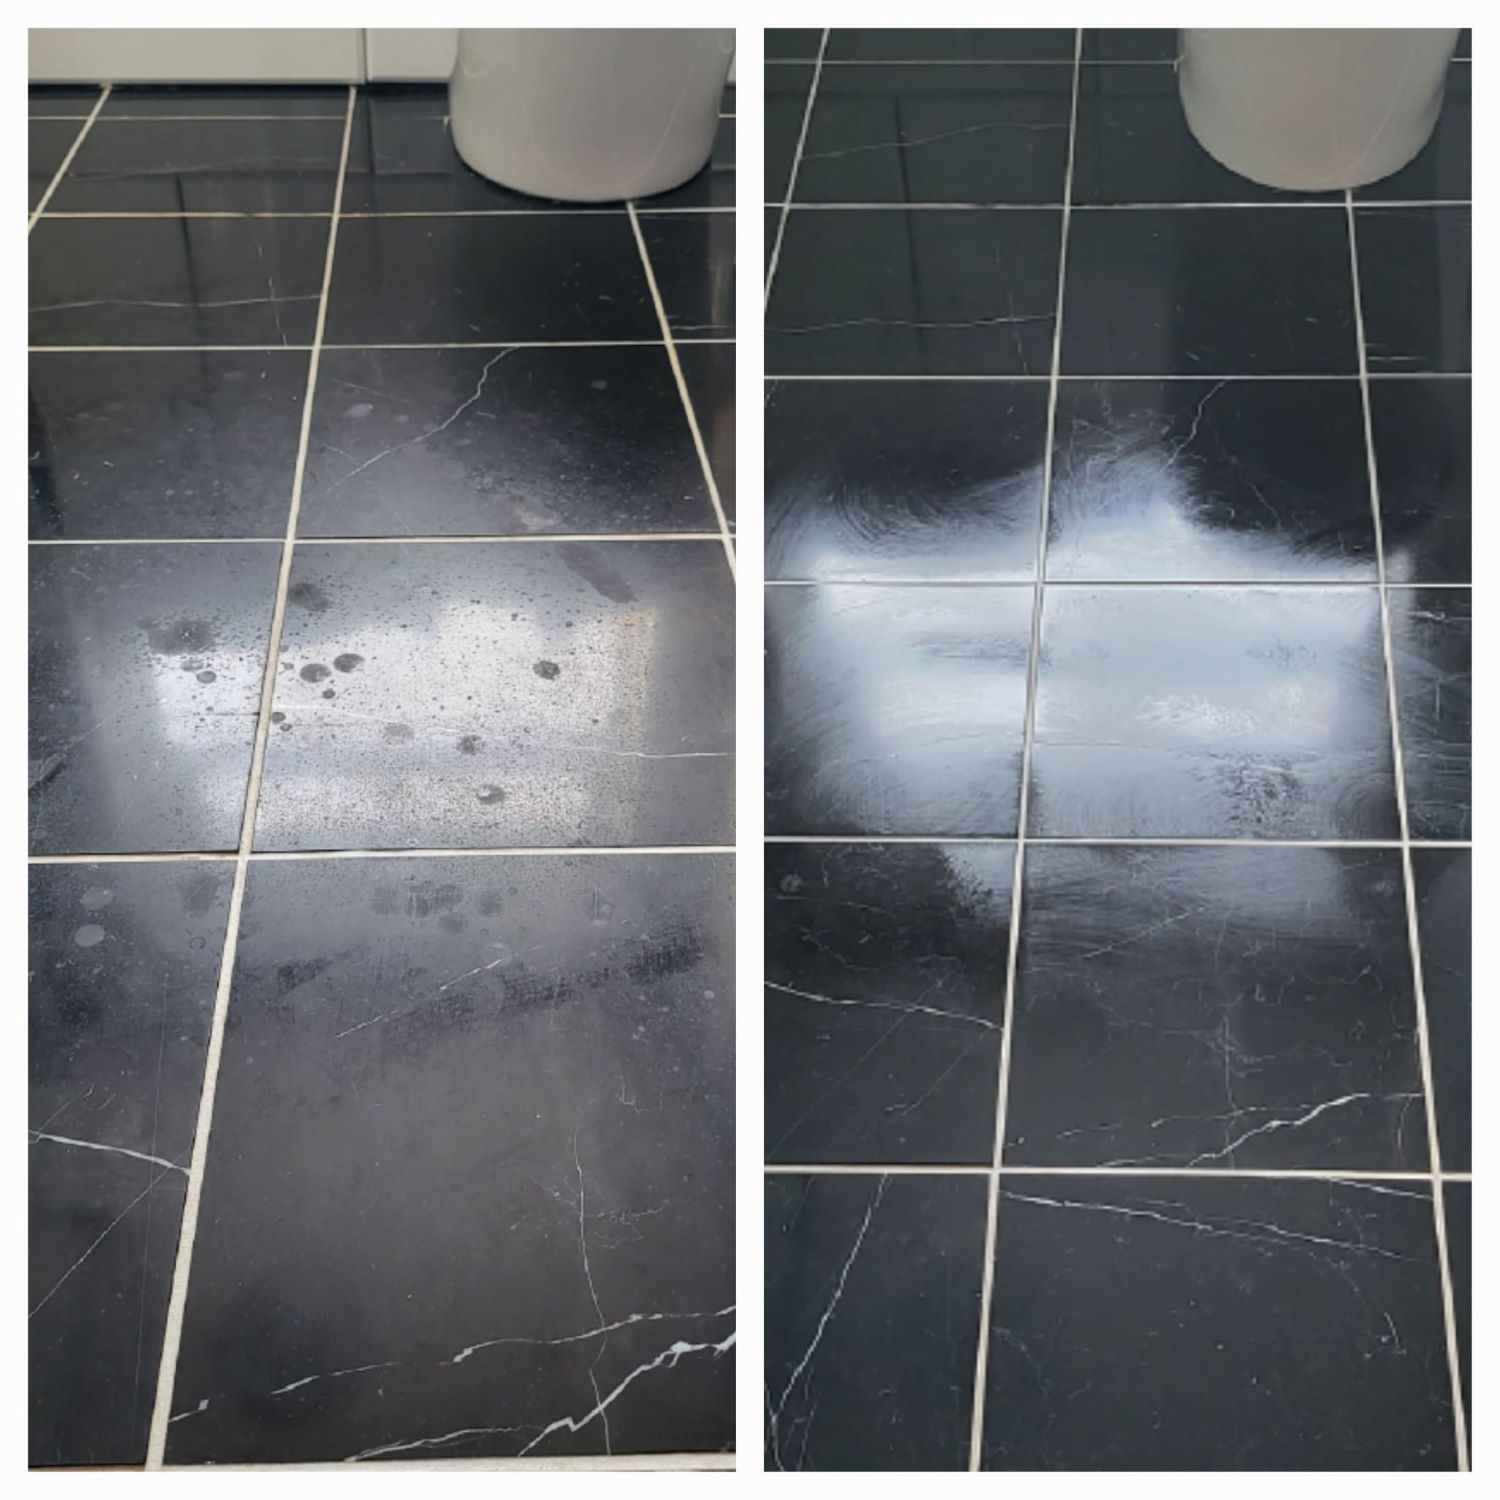 cleaned toilet floor 